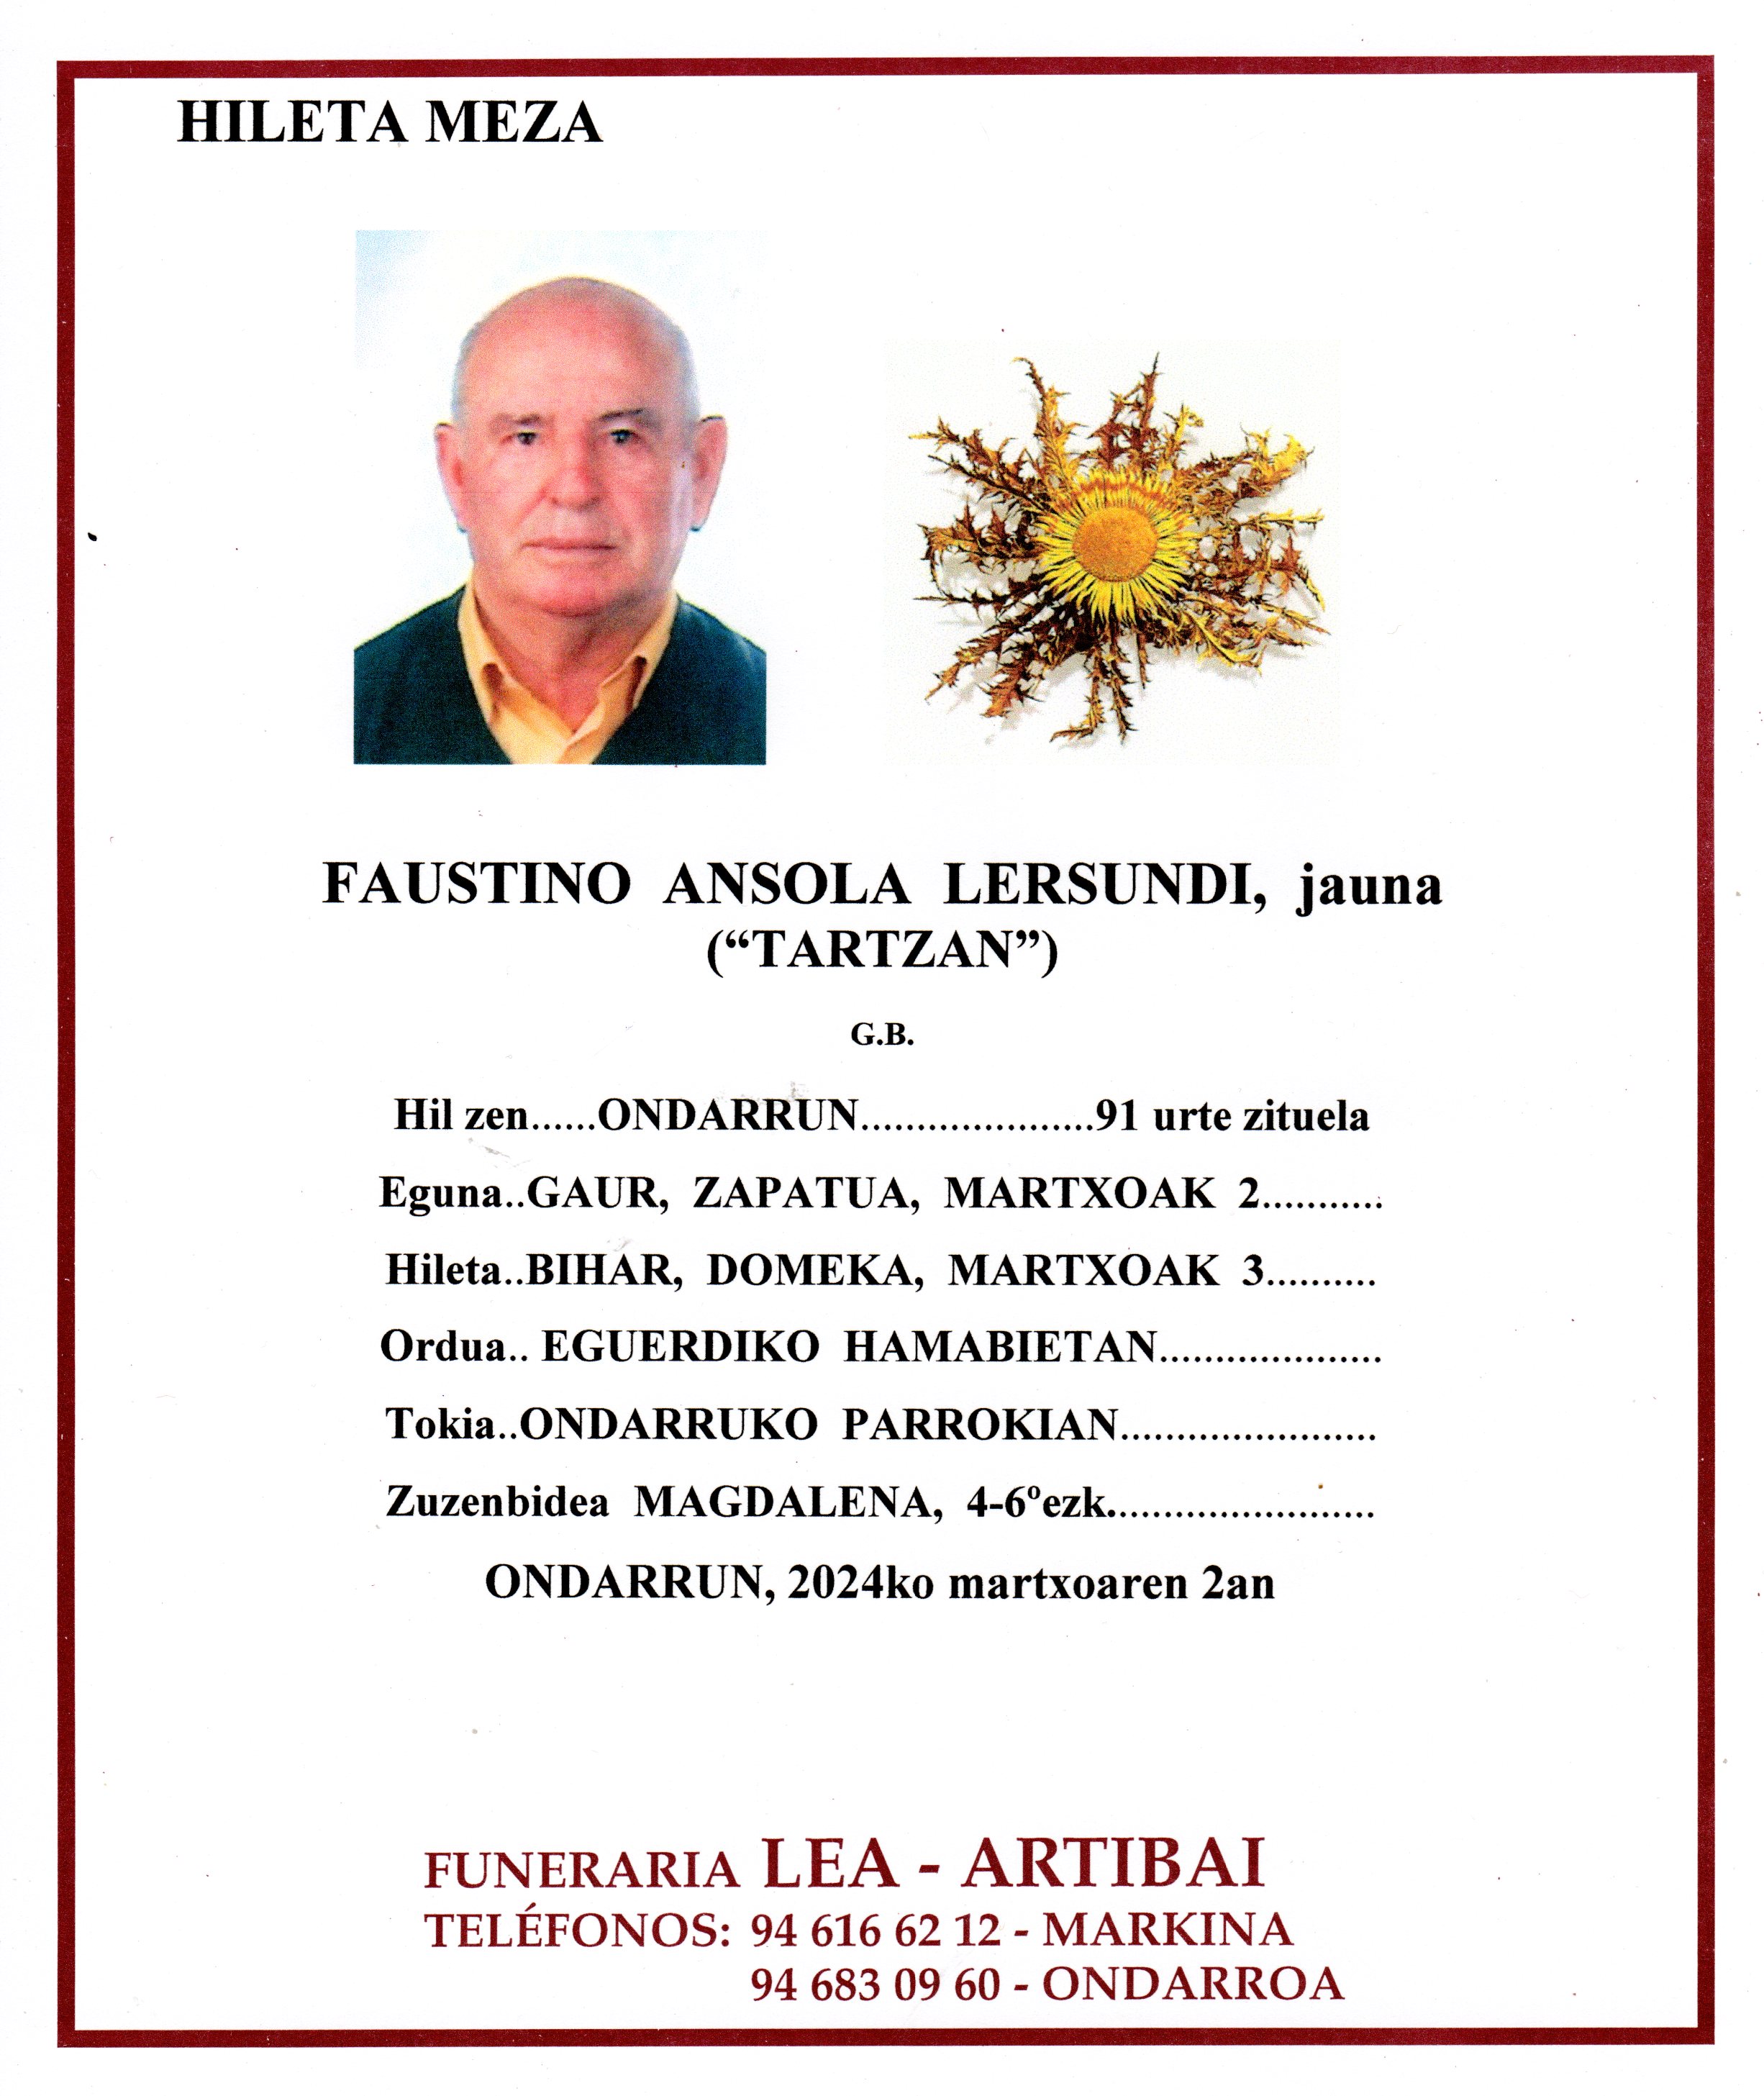 Faustino Ansola Lersundi